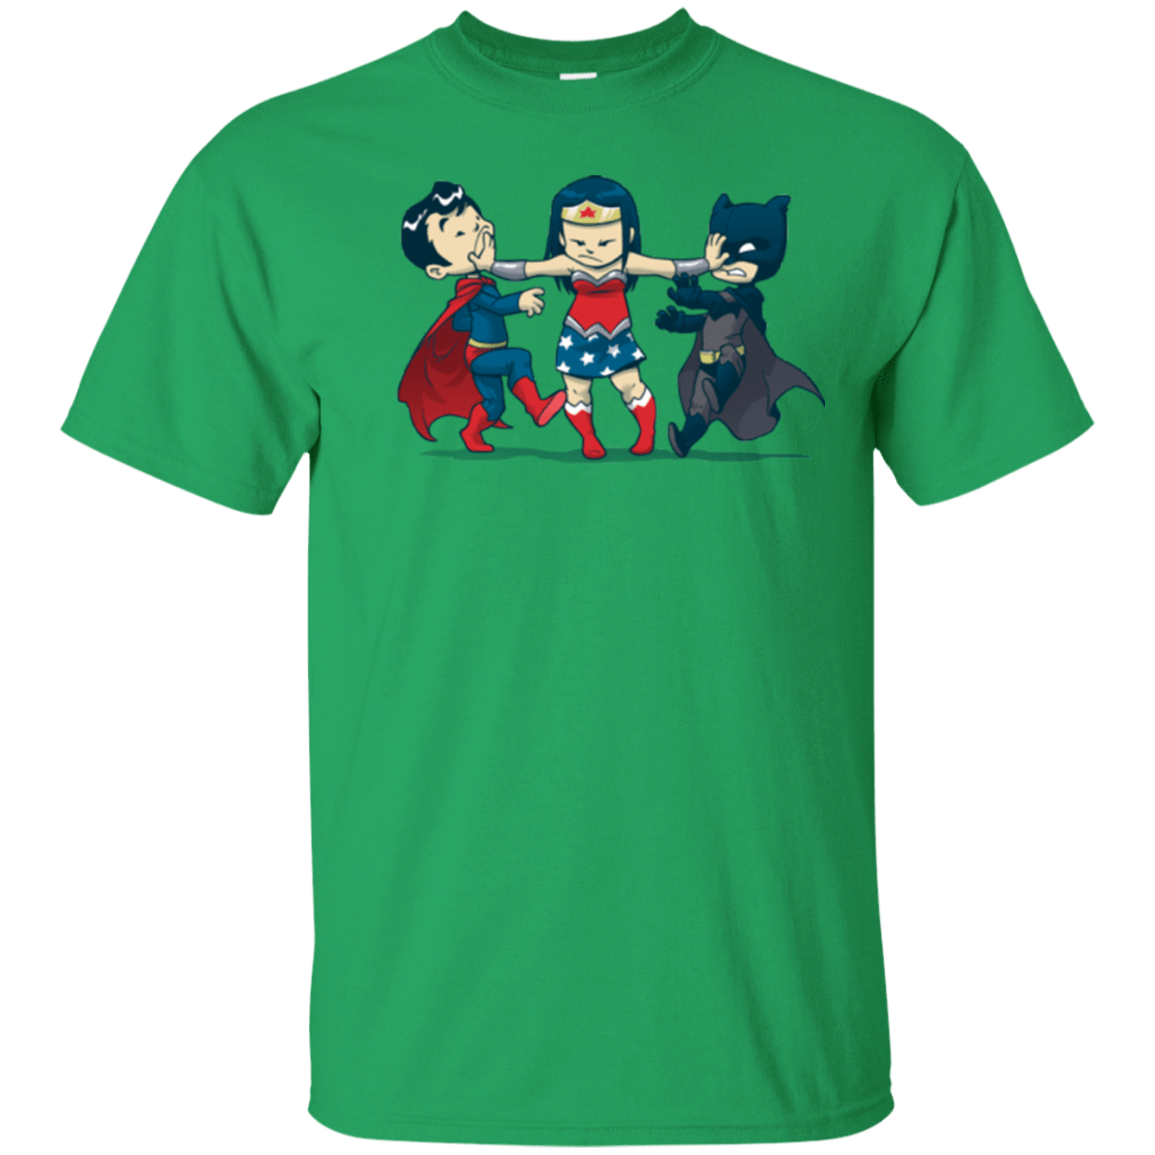 T-Shirts Irish Green / Small Boys T-Shirt